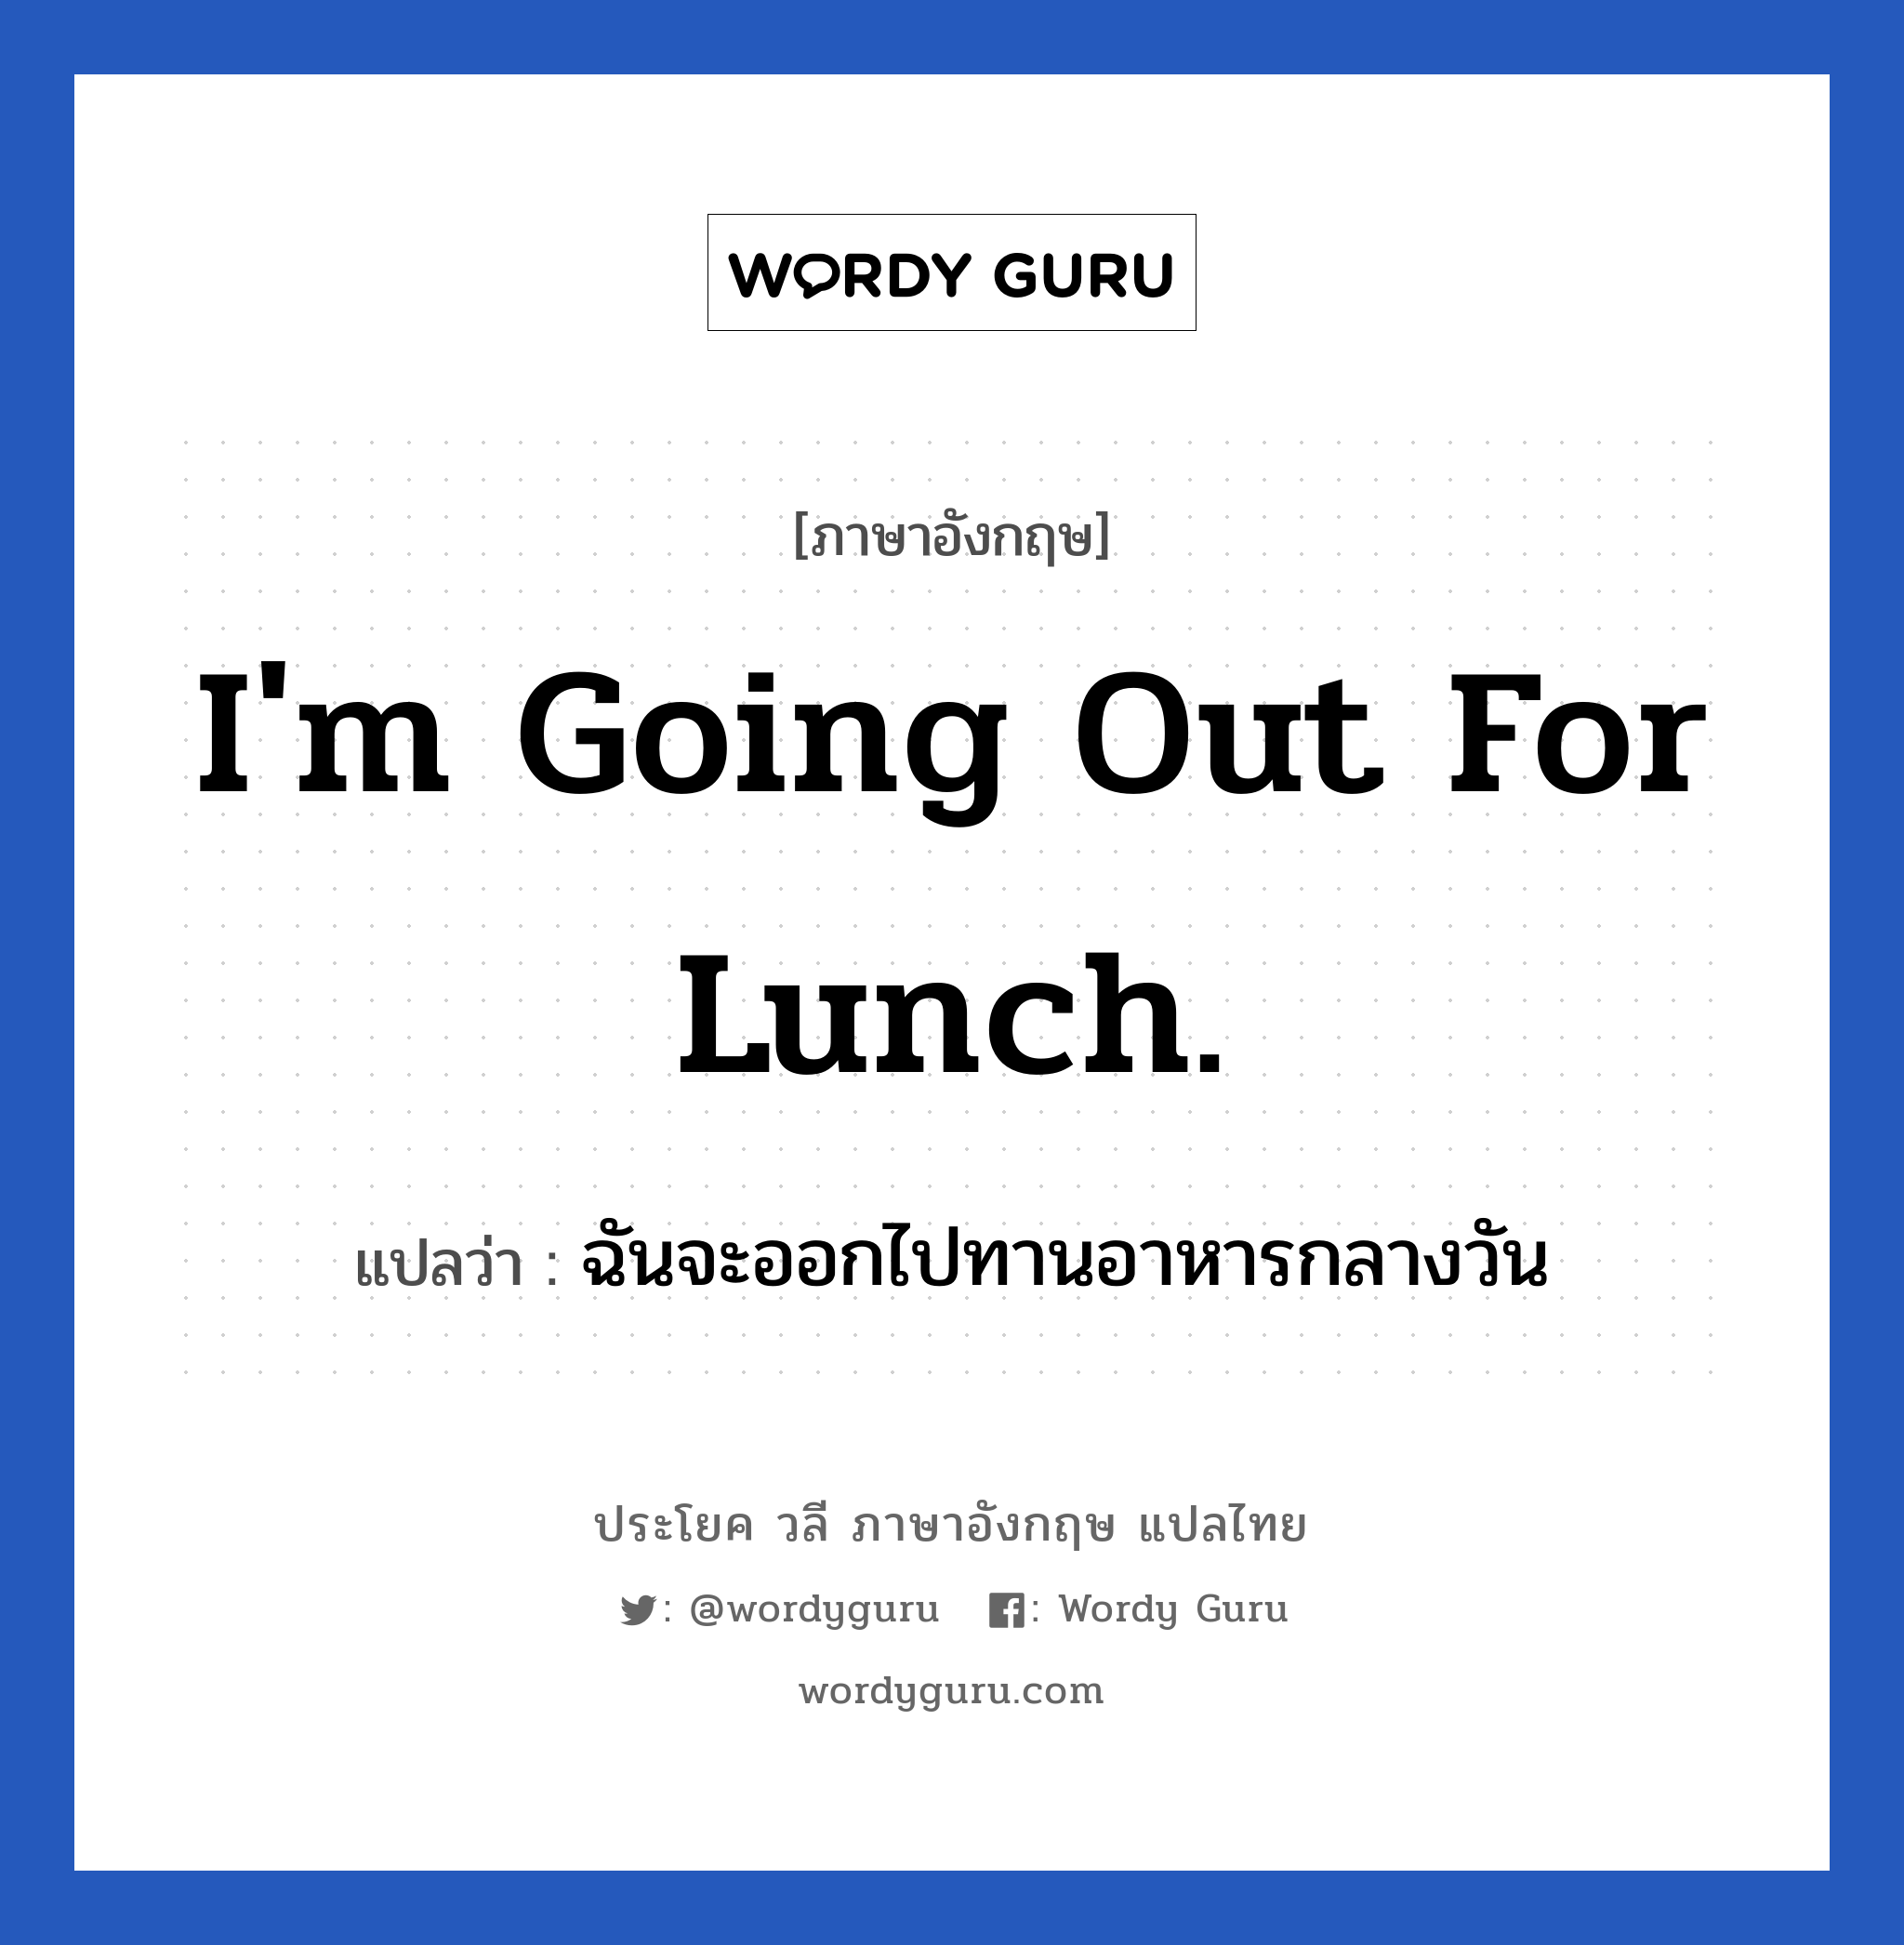 ฉันจะออกไปทานอาหารกลางวัน ภาษาอังกฤษ?, วลีภาษาอังกฤษ ฉันจะออกไปทานอาหารกลางวัน แปลว่า I'm going out for lunch.